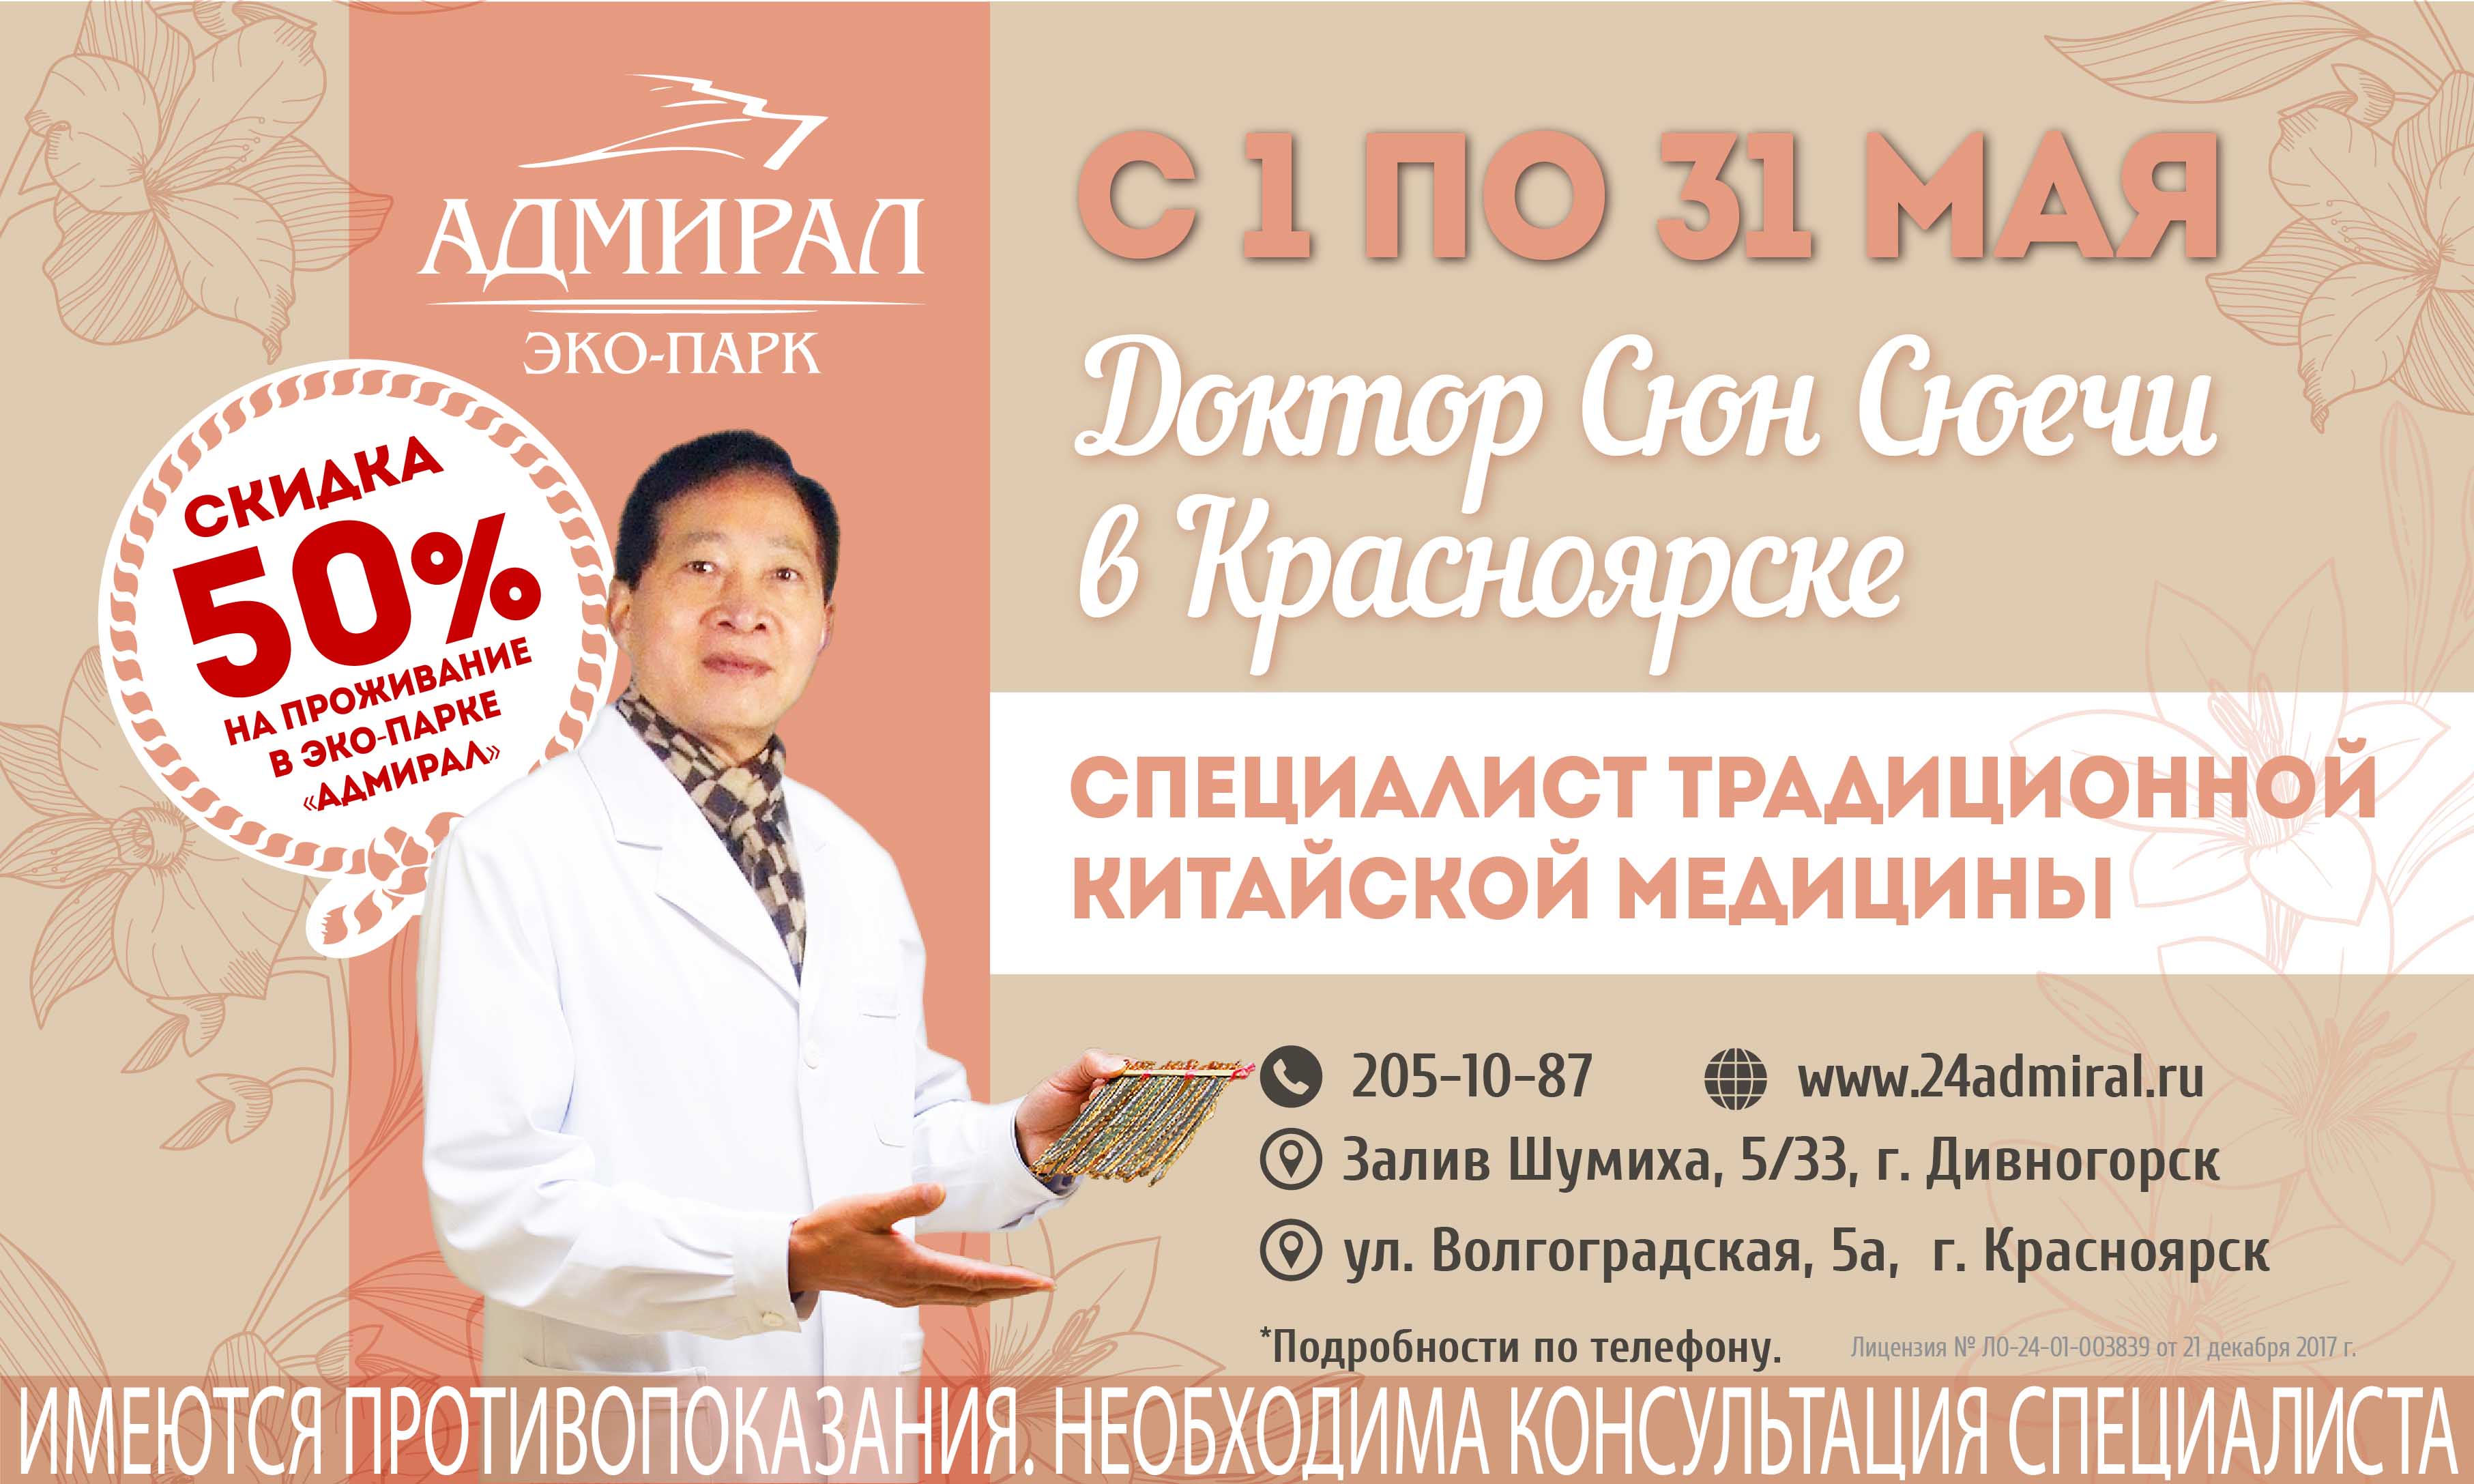 Доктор Сюн Сюечи вернулся в Красноярск | Эко-Парк Адмирал